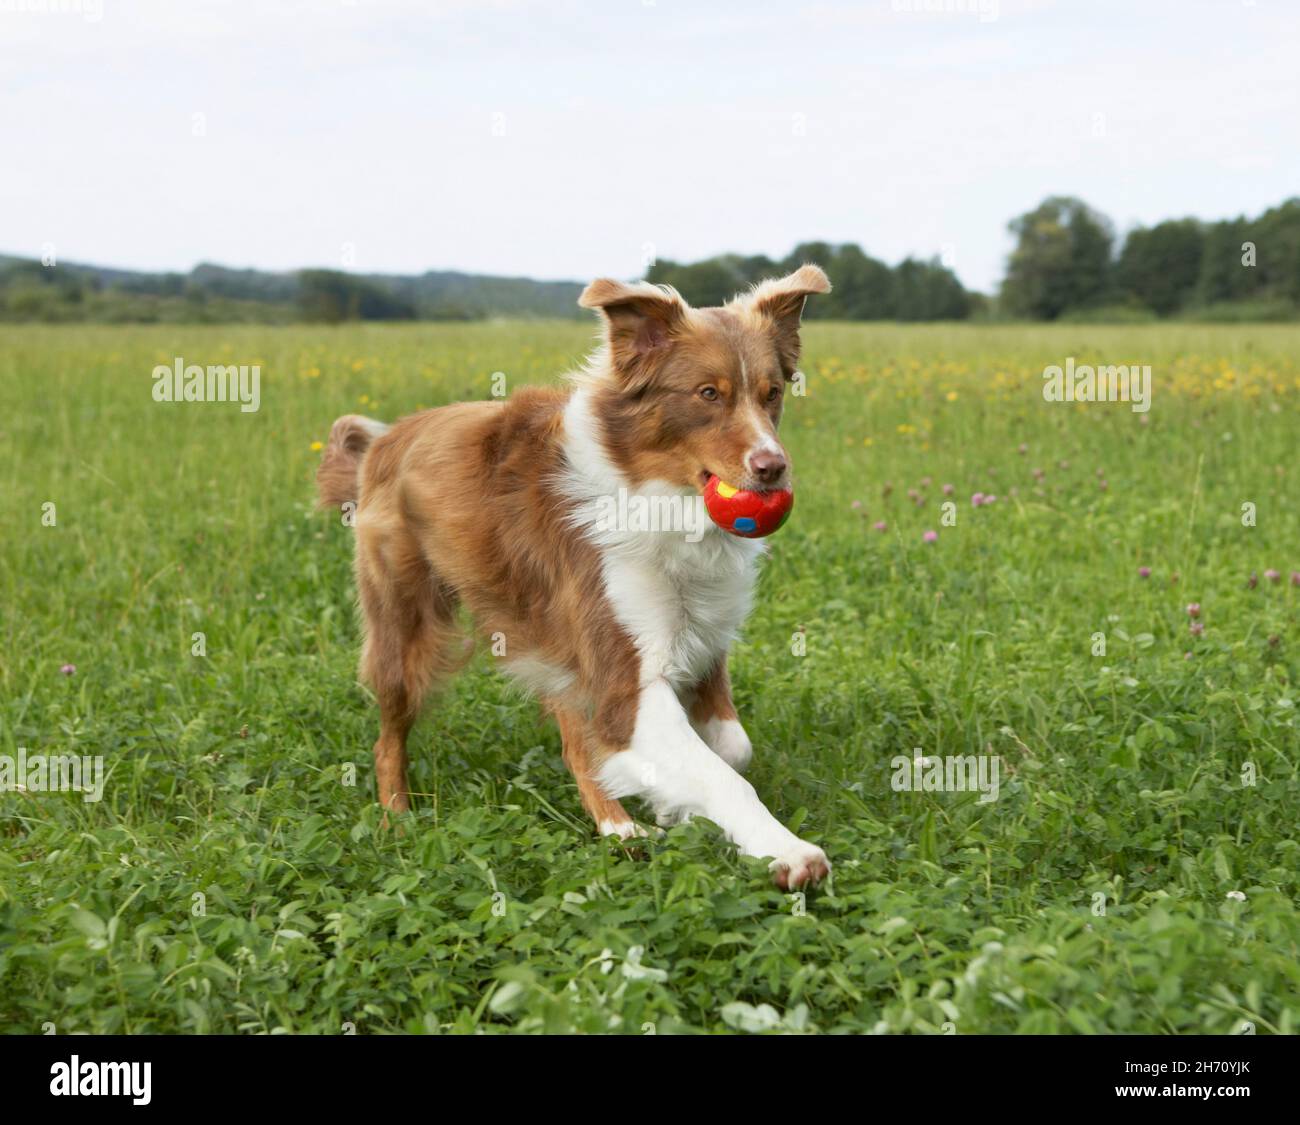 Pastor australiano. Perro adulto corriendo en un prado, llevando una pelota. Alemania Foto de stock